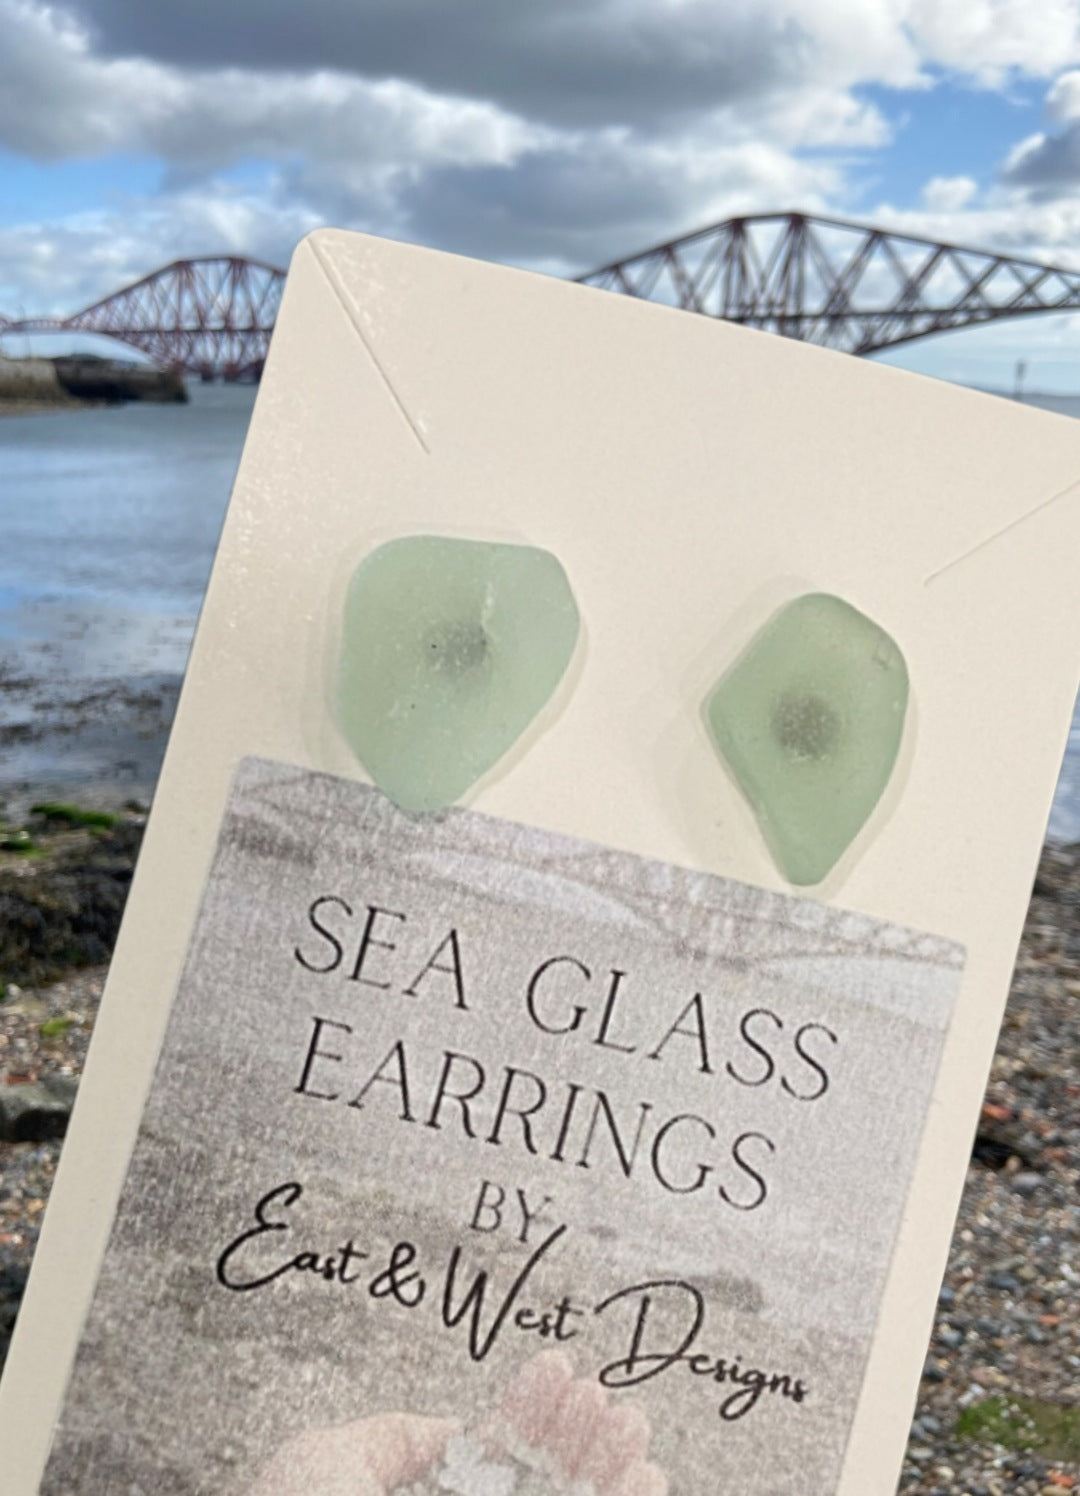 Sea Glass Earings